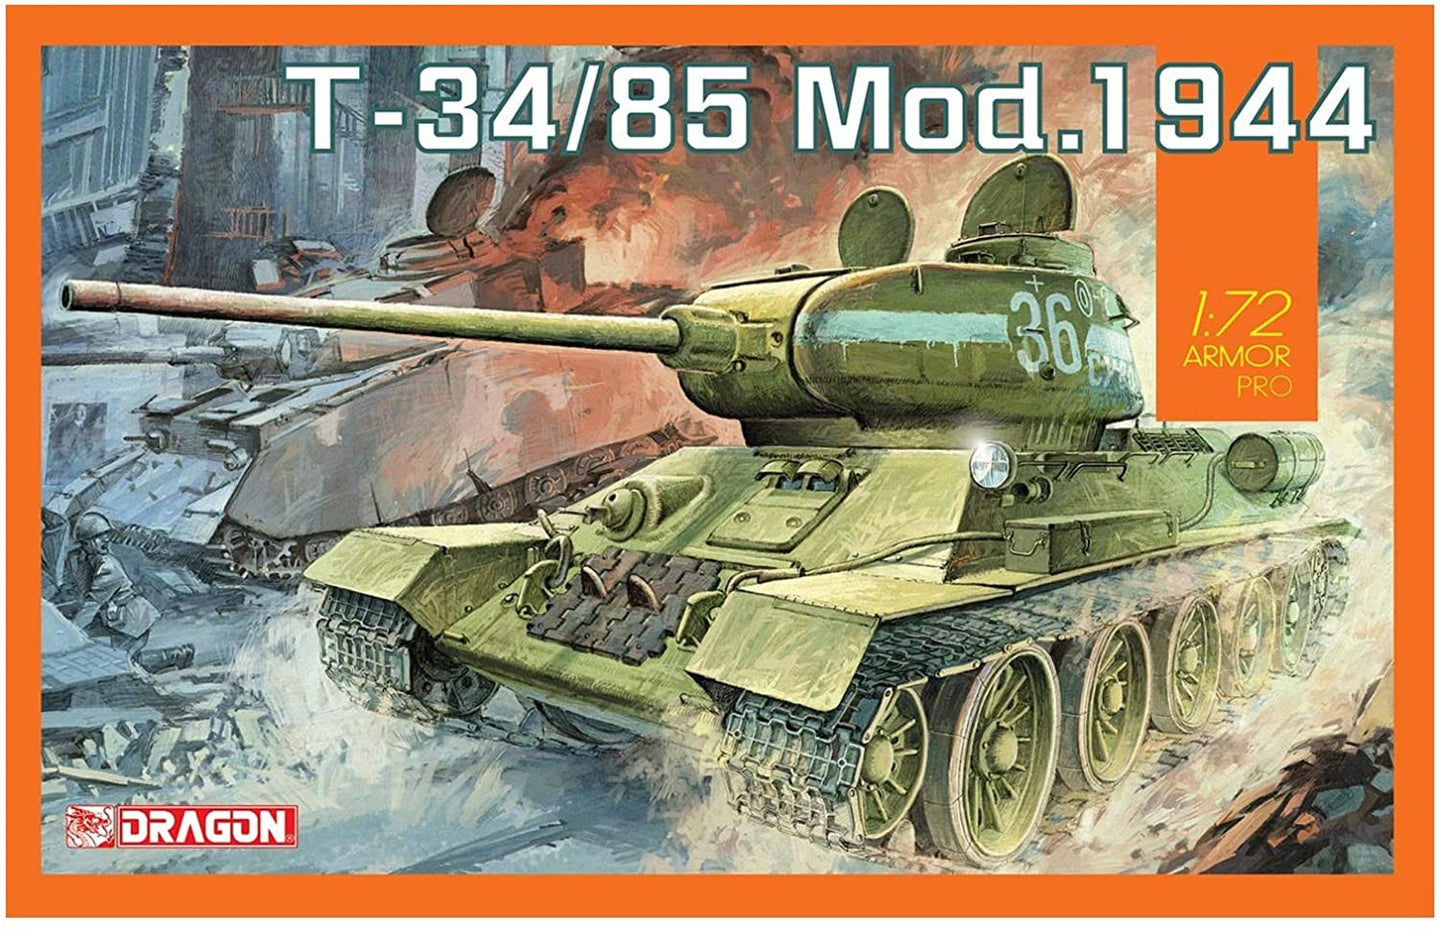 Dragon 1/72 Russian T-34/85 Mod. 1944 7556